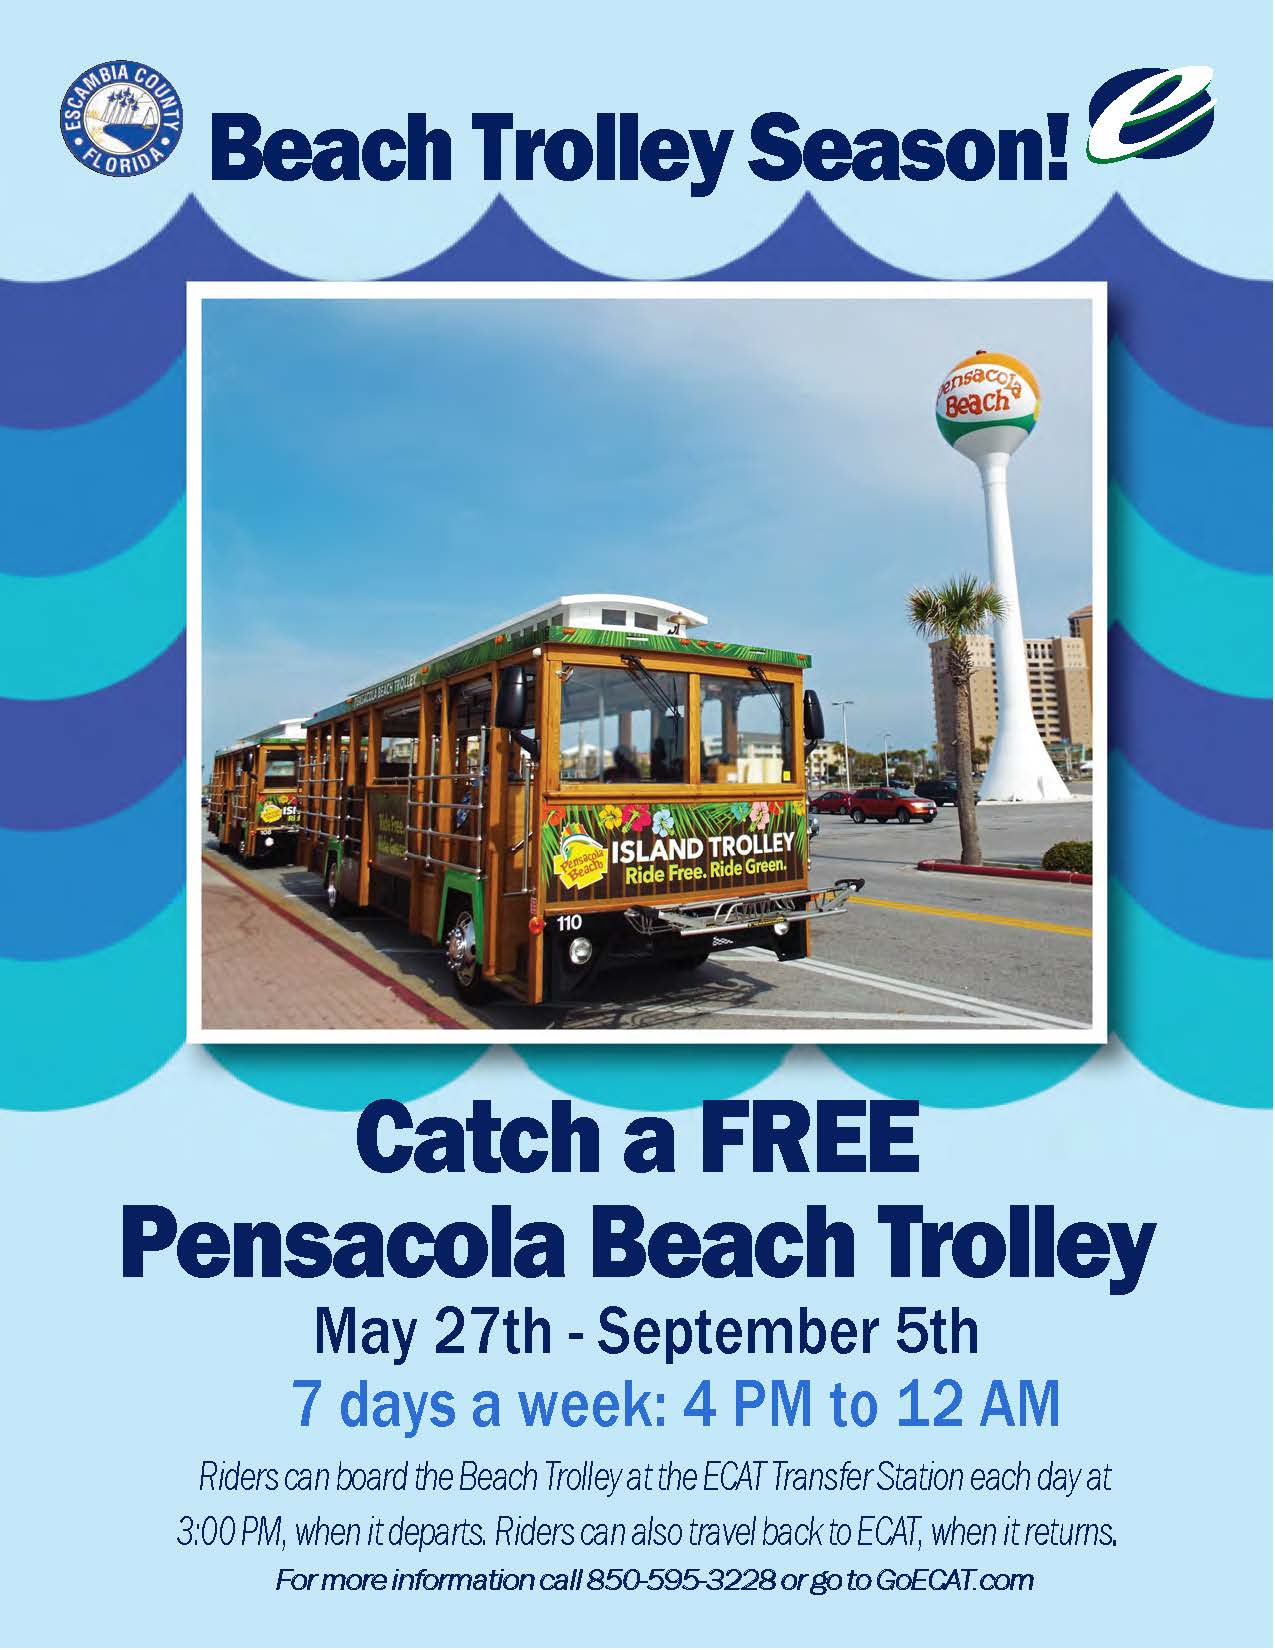 Pensacola Beach Trolley